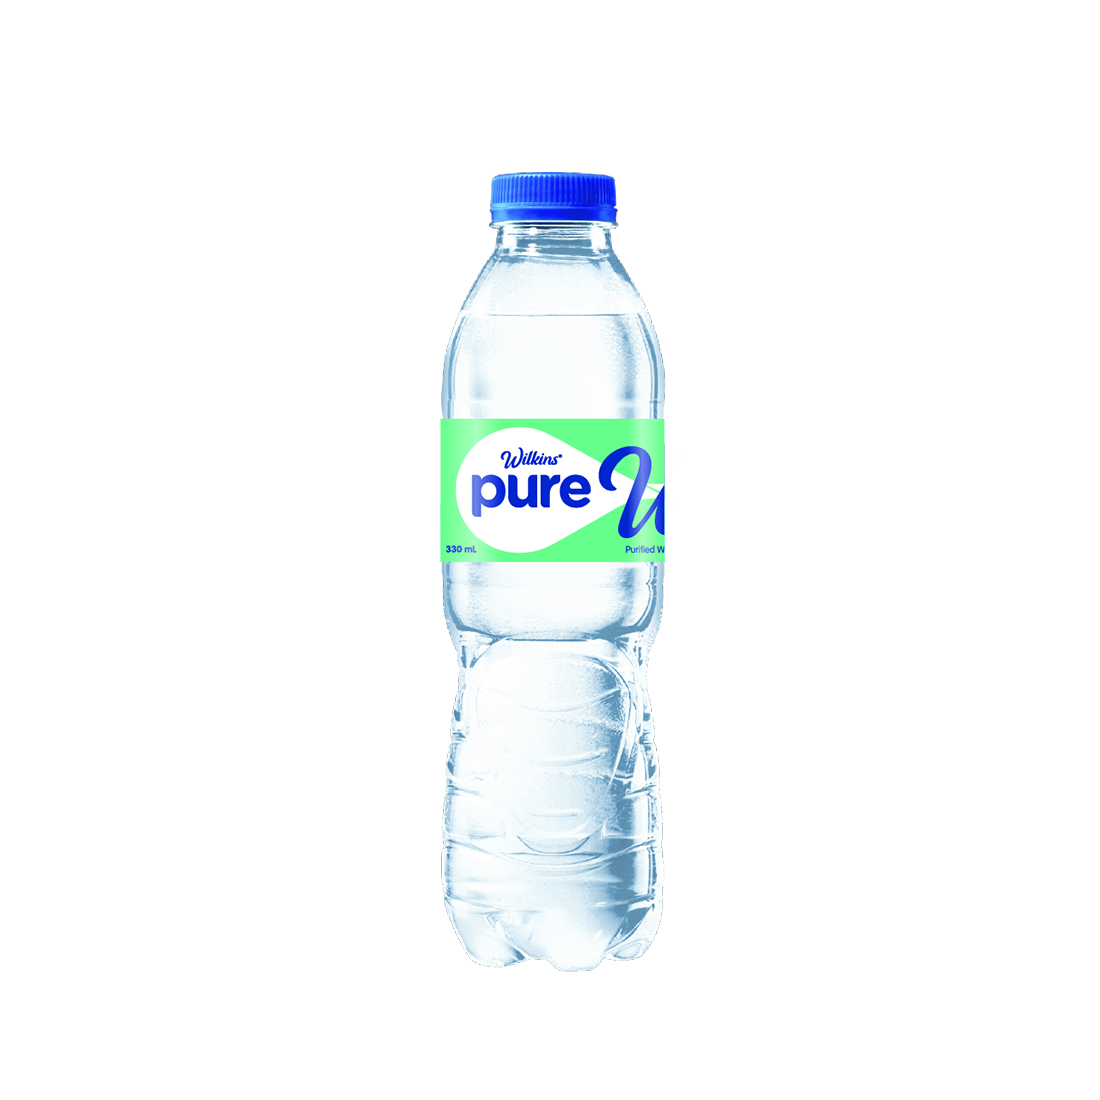 Wilkins Pure bottle